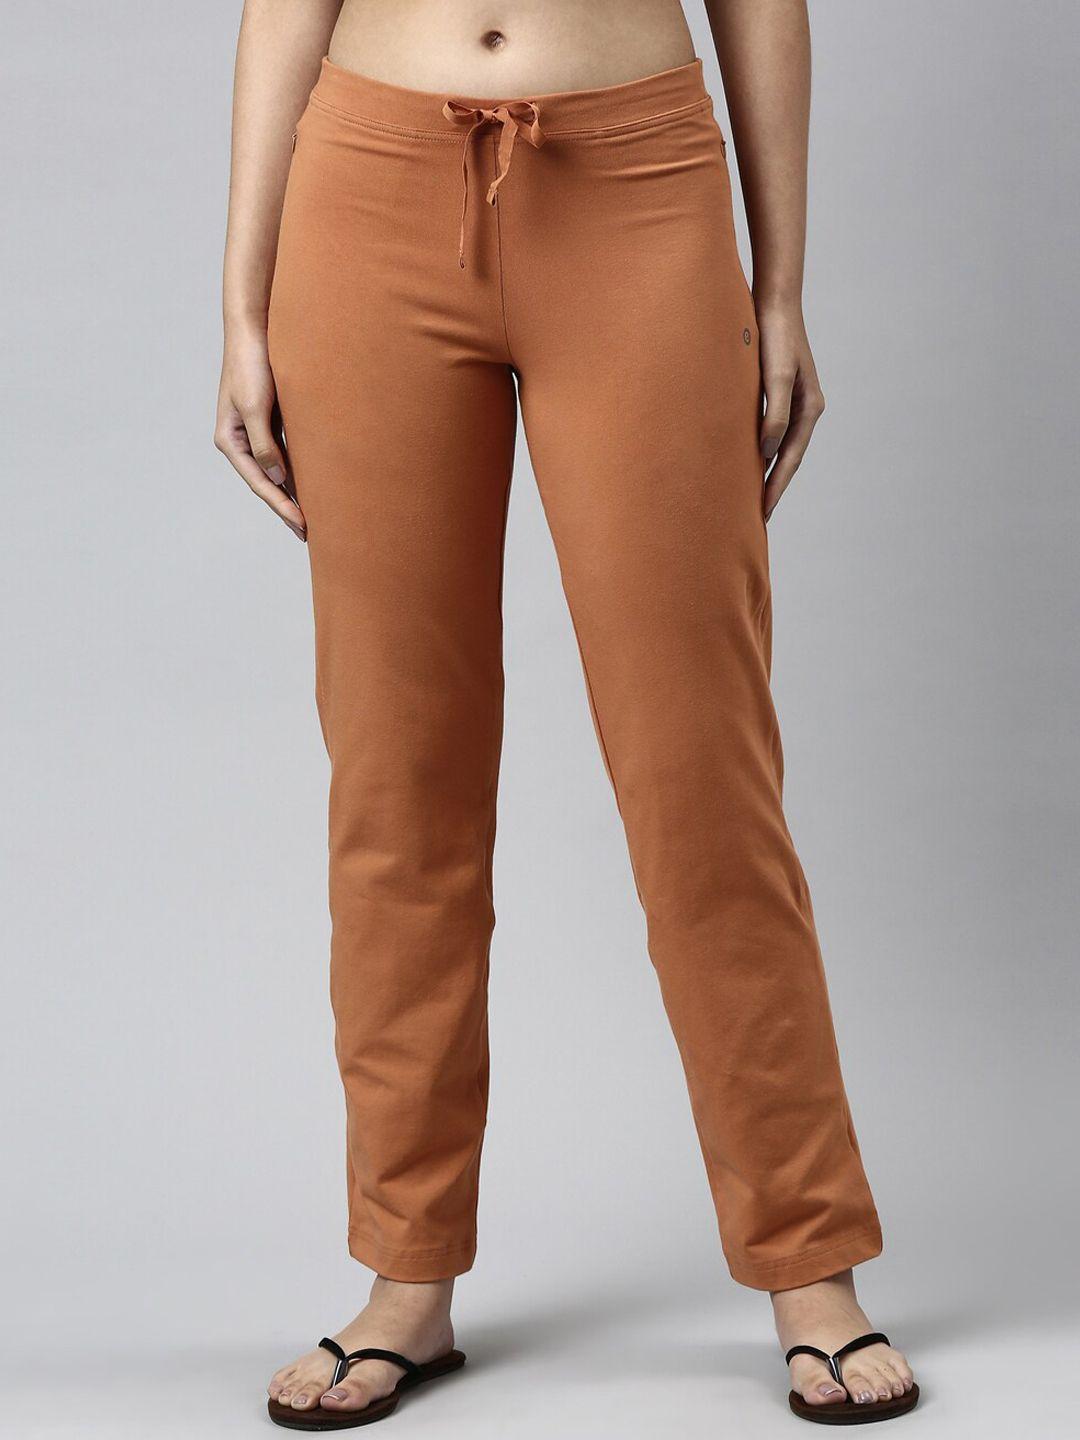 enamor-women-plus-size-orange-solid-cotton-slim-fit-lounge-pants